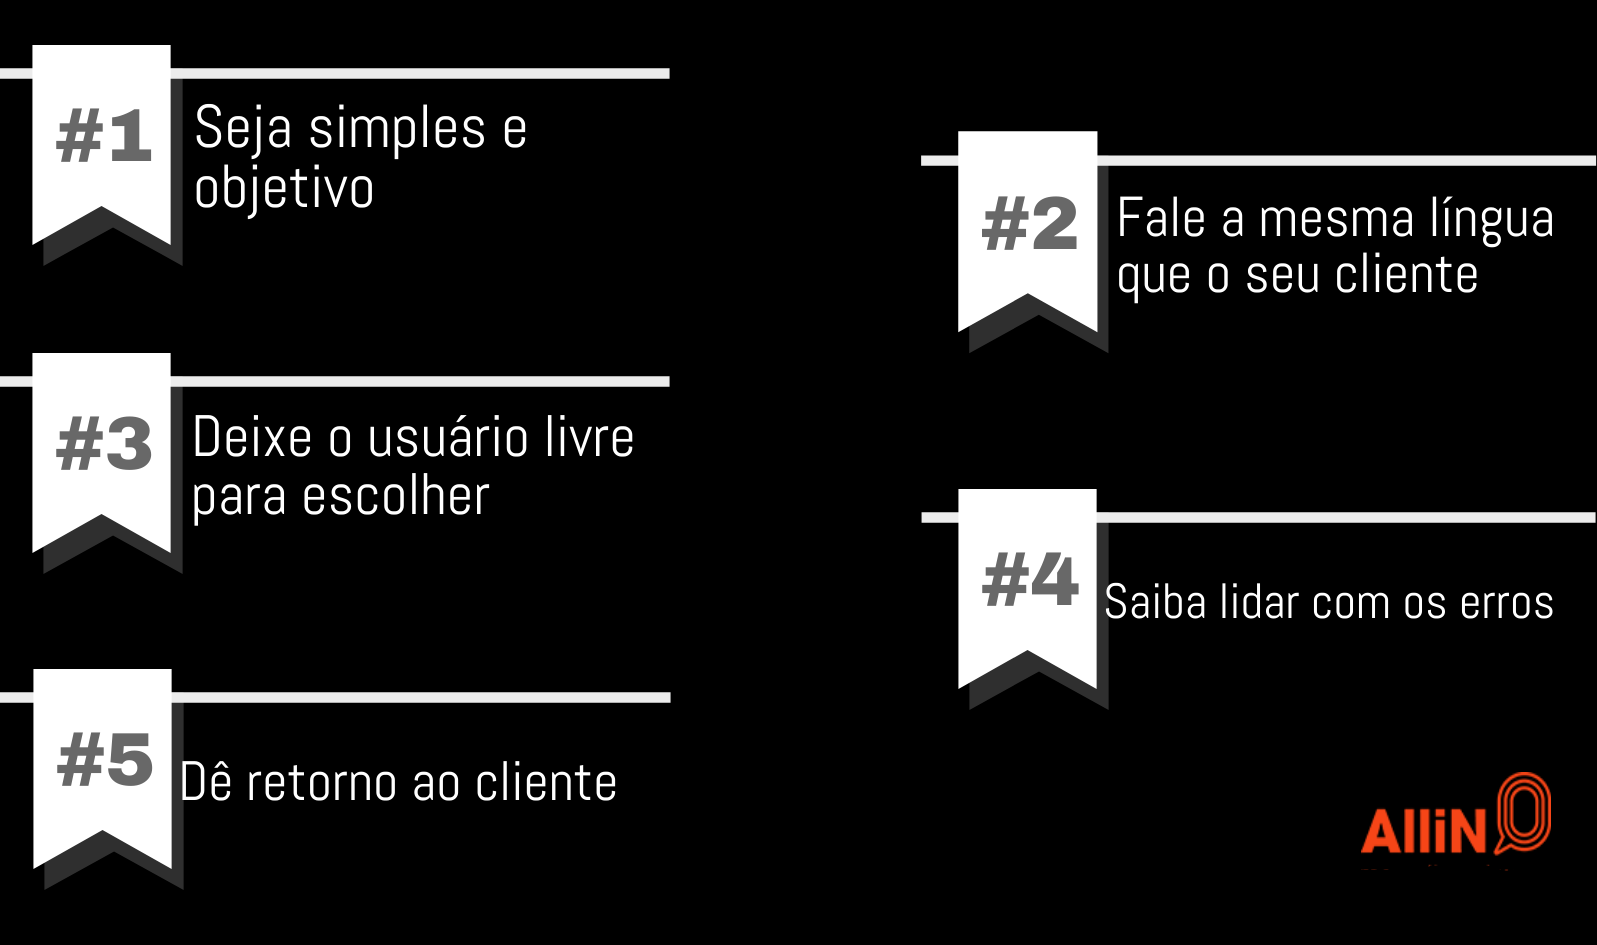 Na imagem, temos as 5 principais regras da usabilidade: 1. seja simples e objetivo; 2. fale a mesma língua que o seu cliente; 3. deixe o usuário livre para escolher; 4. saiba lidar com os erros; 5. dê retorno ao cliente.